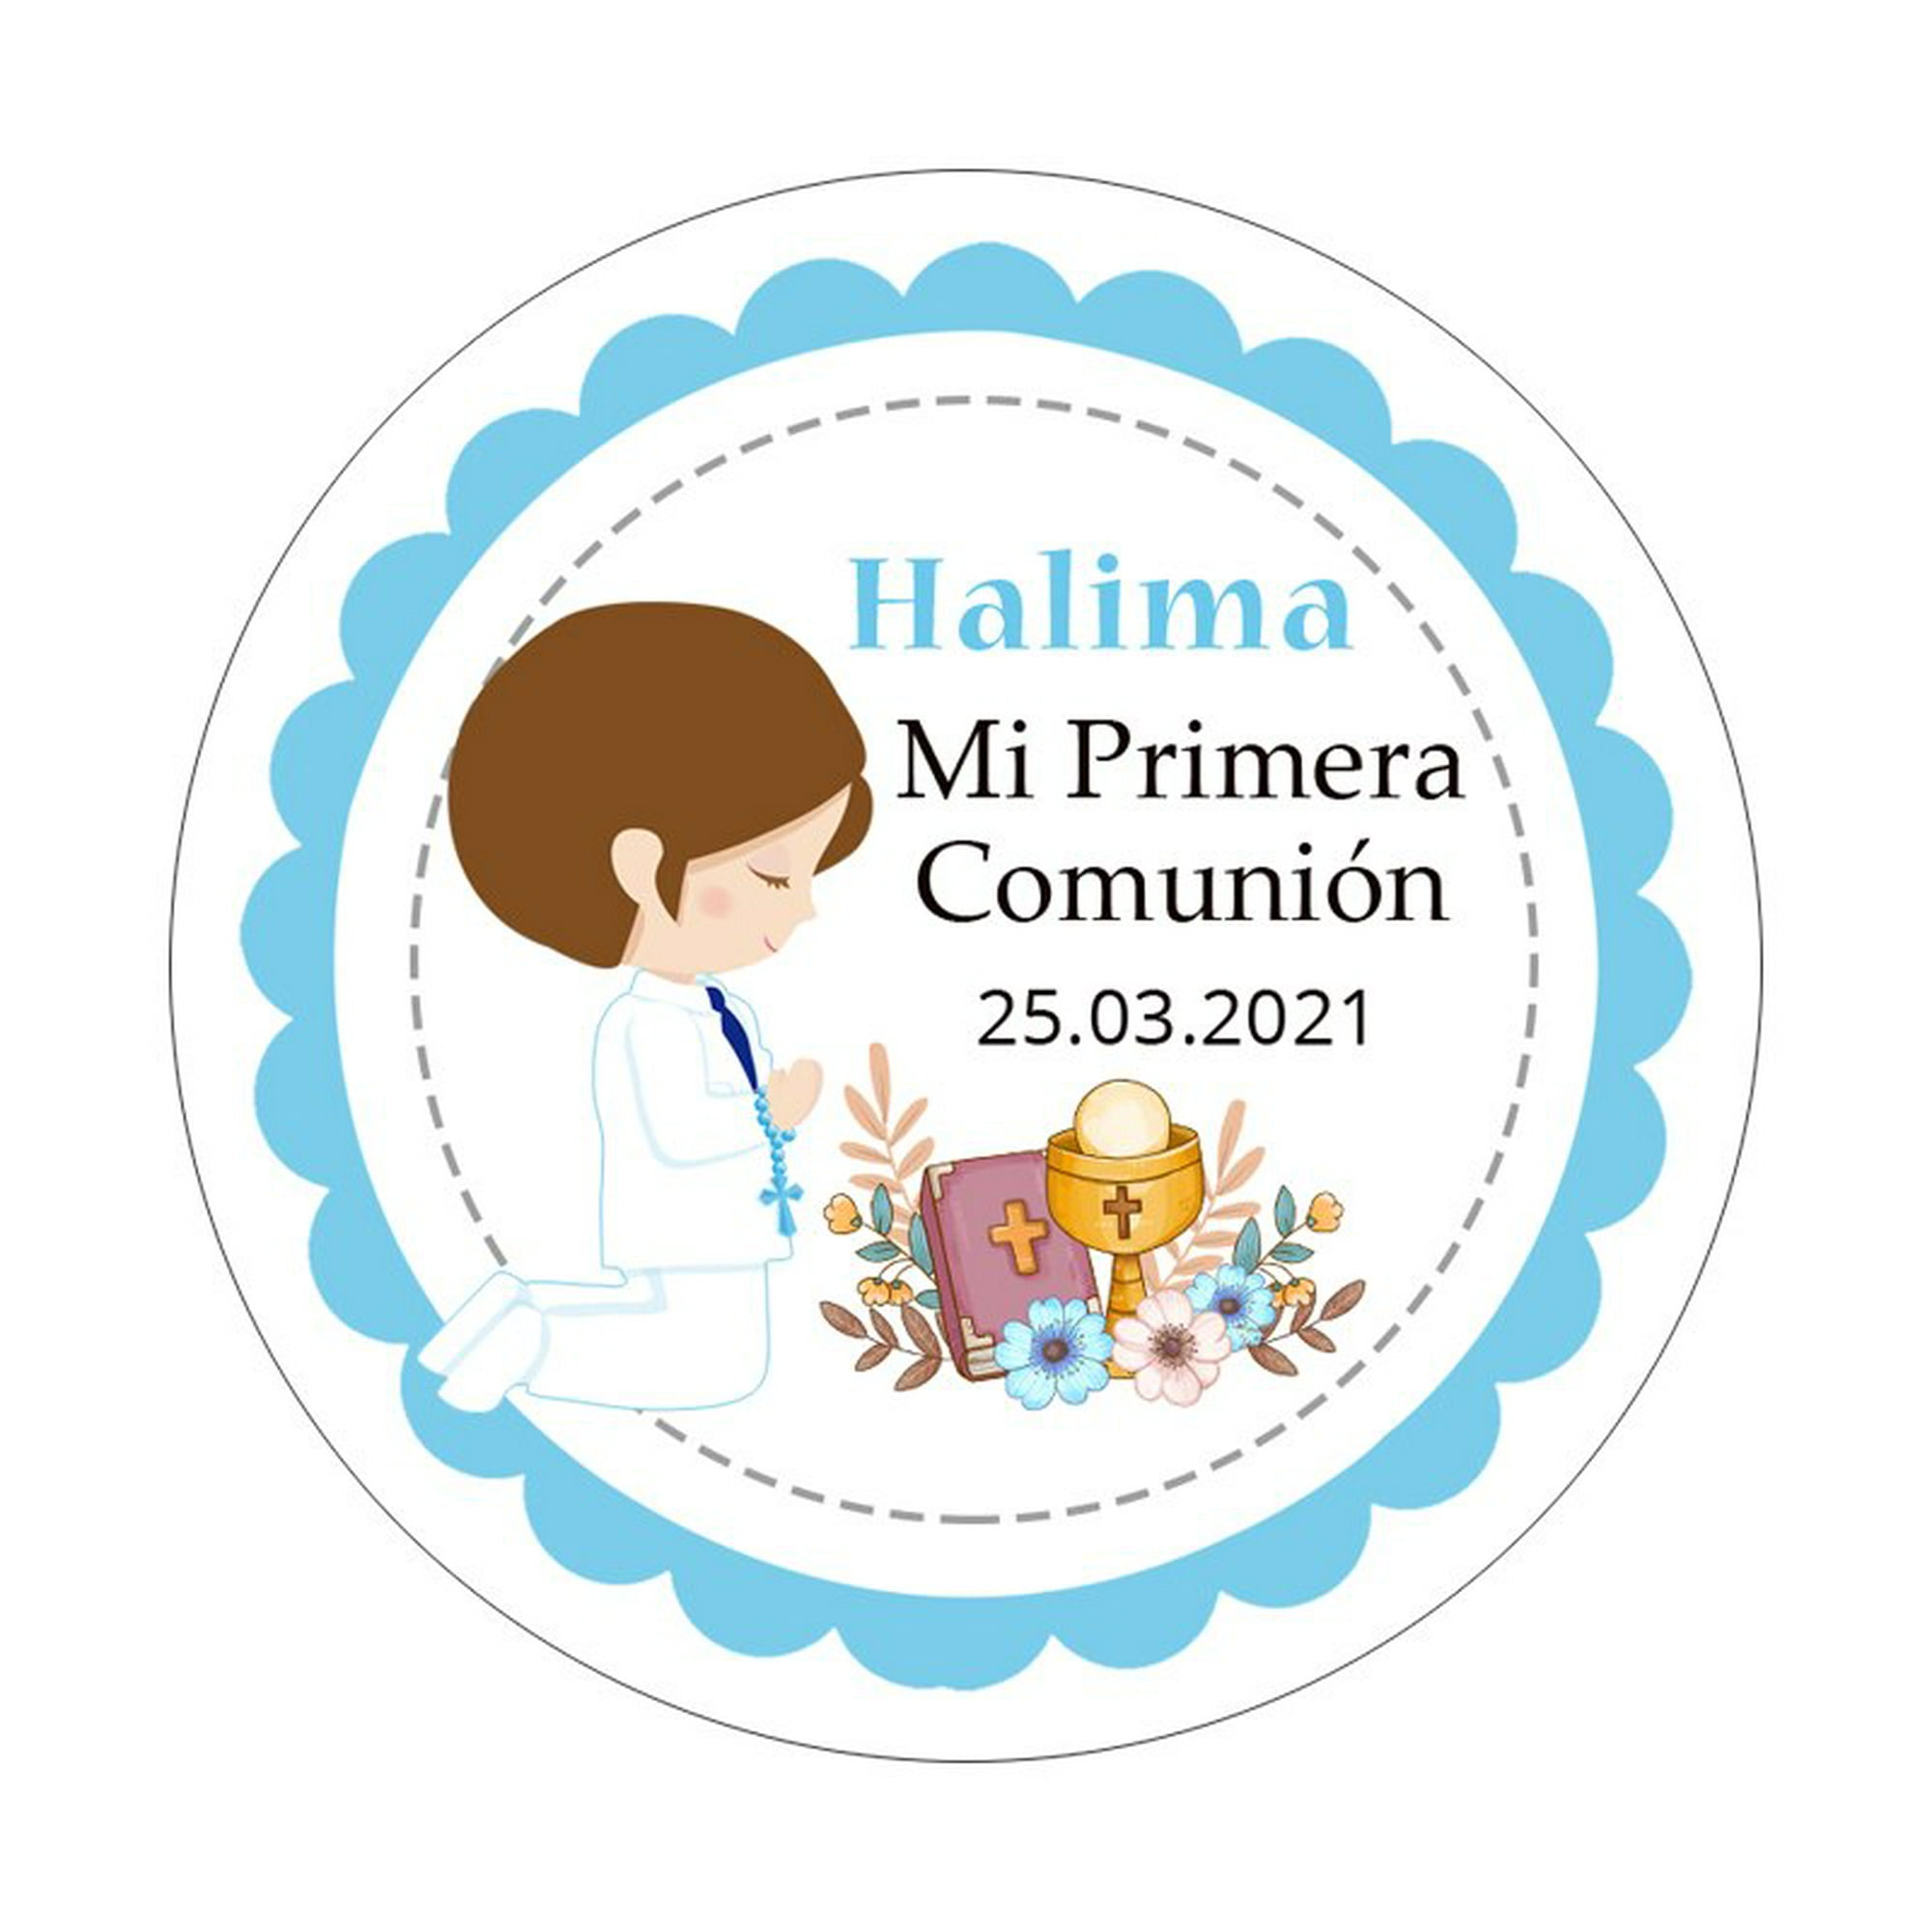 Pegatinas personalizadas de primera comunión para niño y niña, etiquetas de  recuerdo de primera comunión, bautismo, 100 piezas